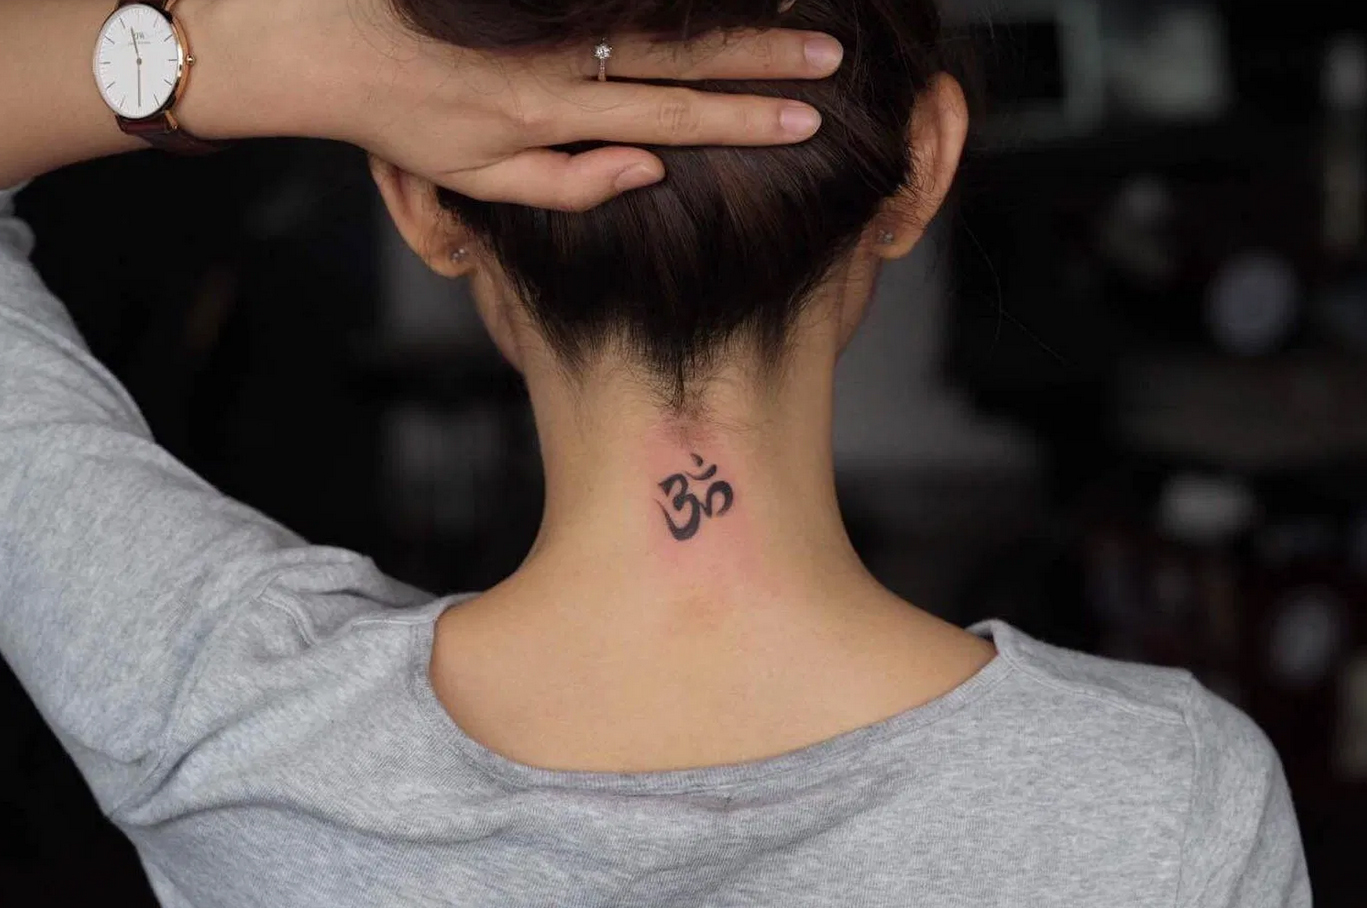 Bagia tattoo  Hình xăm chữ OM được thiết kế  Facebook